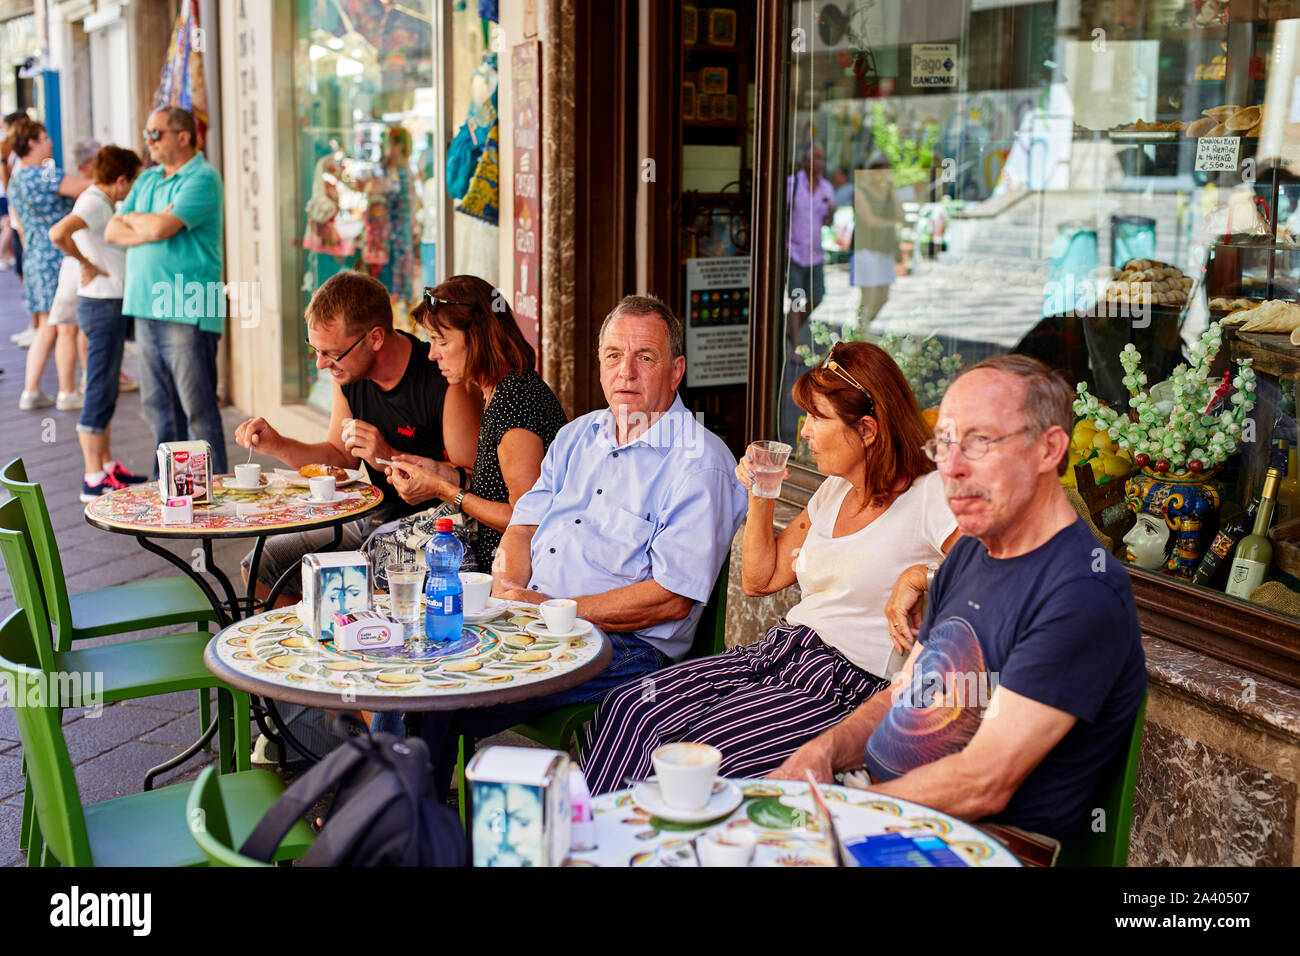 Cafe scene in Taormina, Sicily Stock Photo